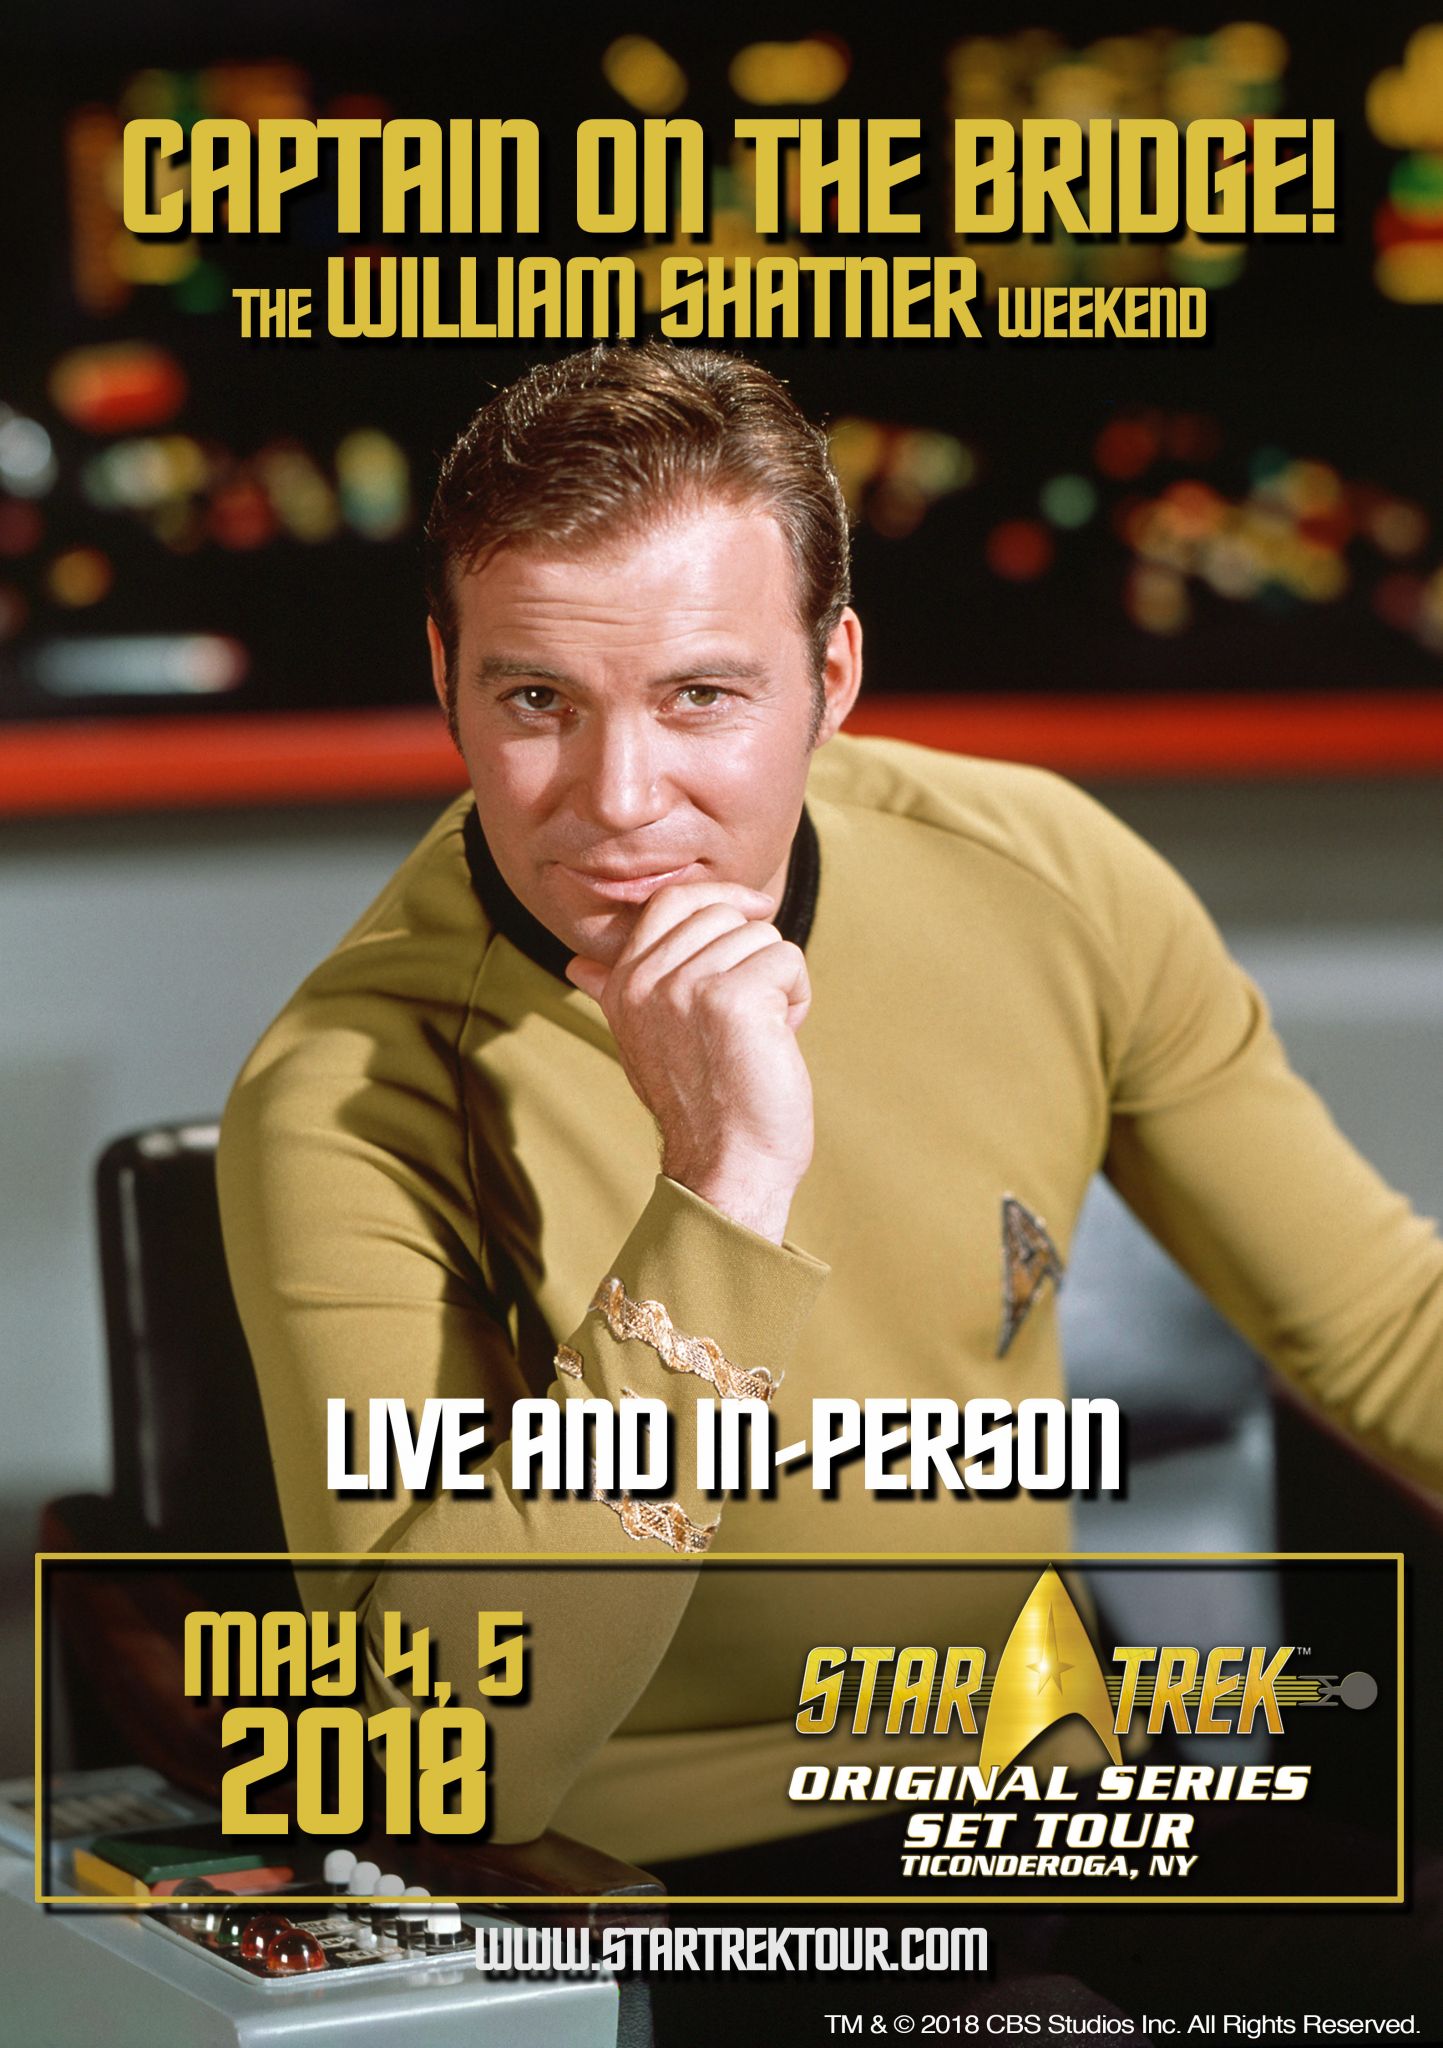 William Shatner will visit Ticonderoga Star Trek set